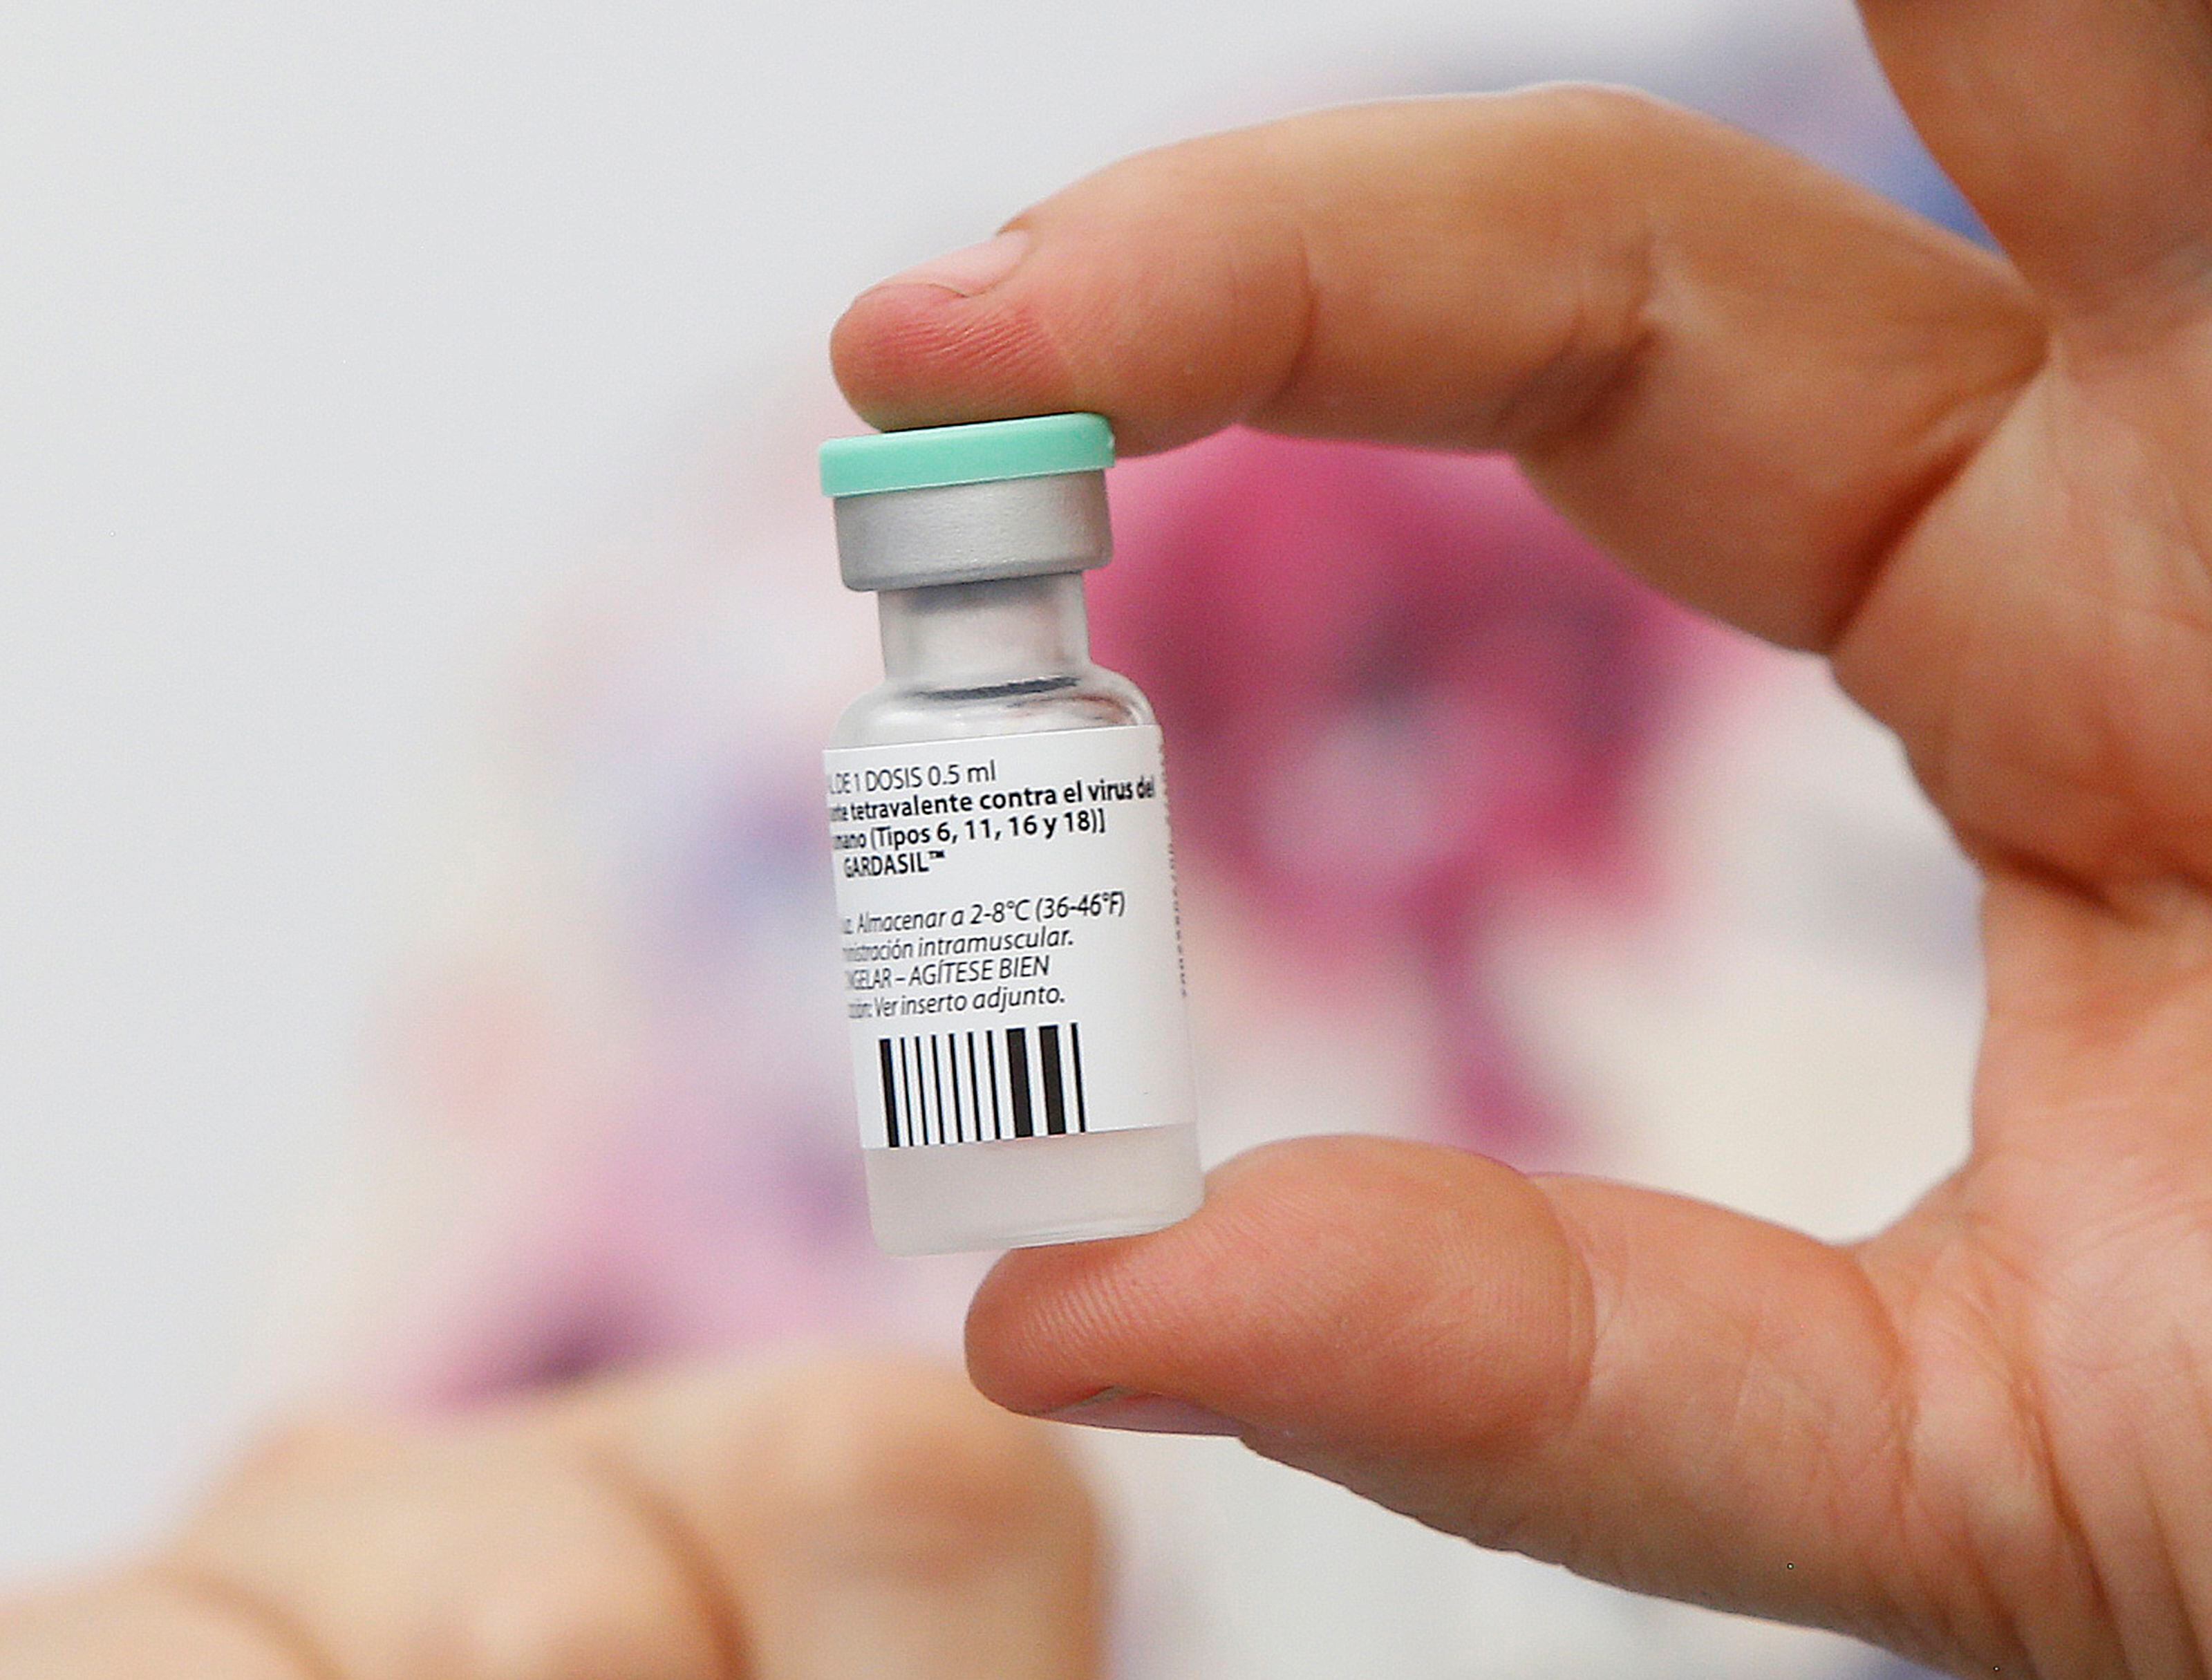 La vacuna contra el papiloma humano será utilizada también en hombres de 10 años. Esta había sido utilizada desde 2019 en las niñas de esa edad.